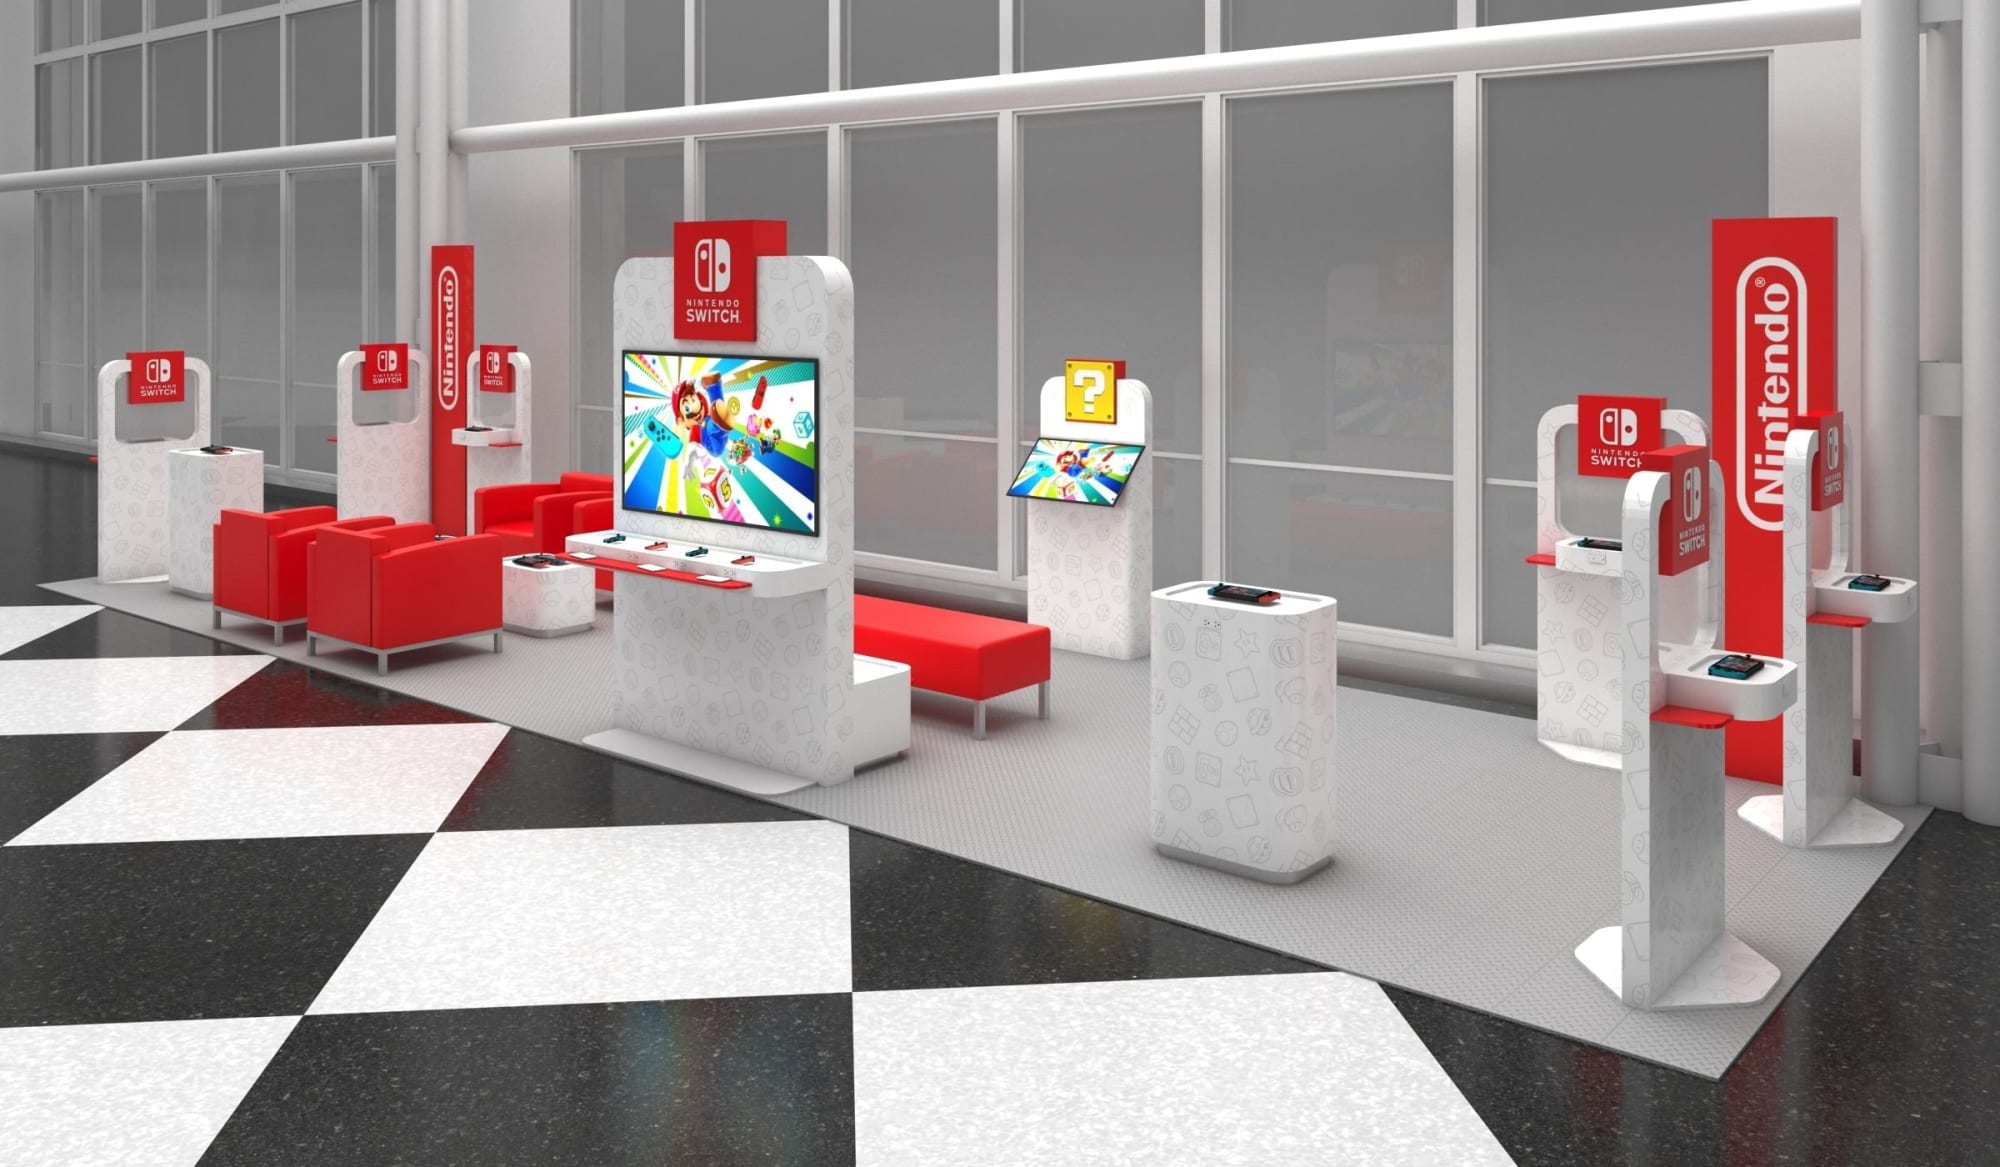 任天堂 米4空港にswitchで遊べるポップアップラウンジ開設 その場で本体 ゲーム購入も可能 Engadget 日本版